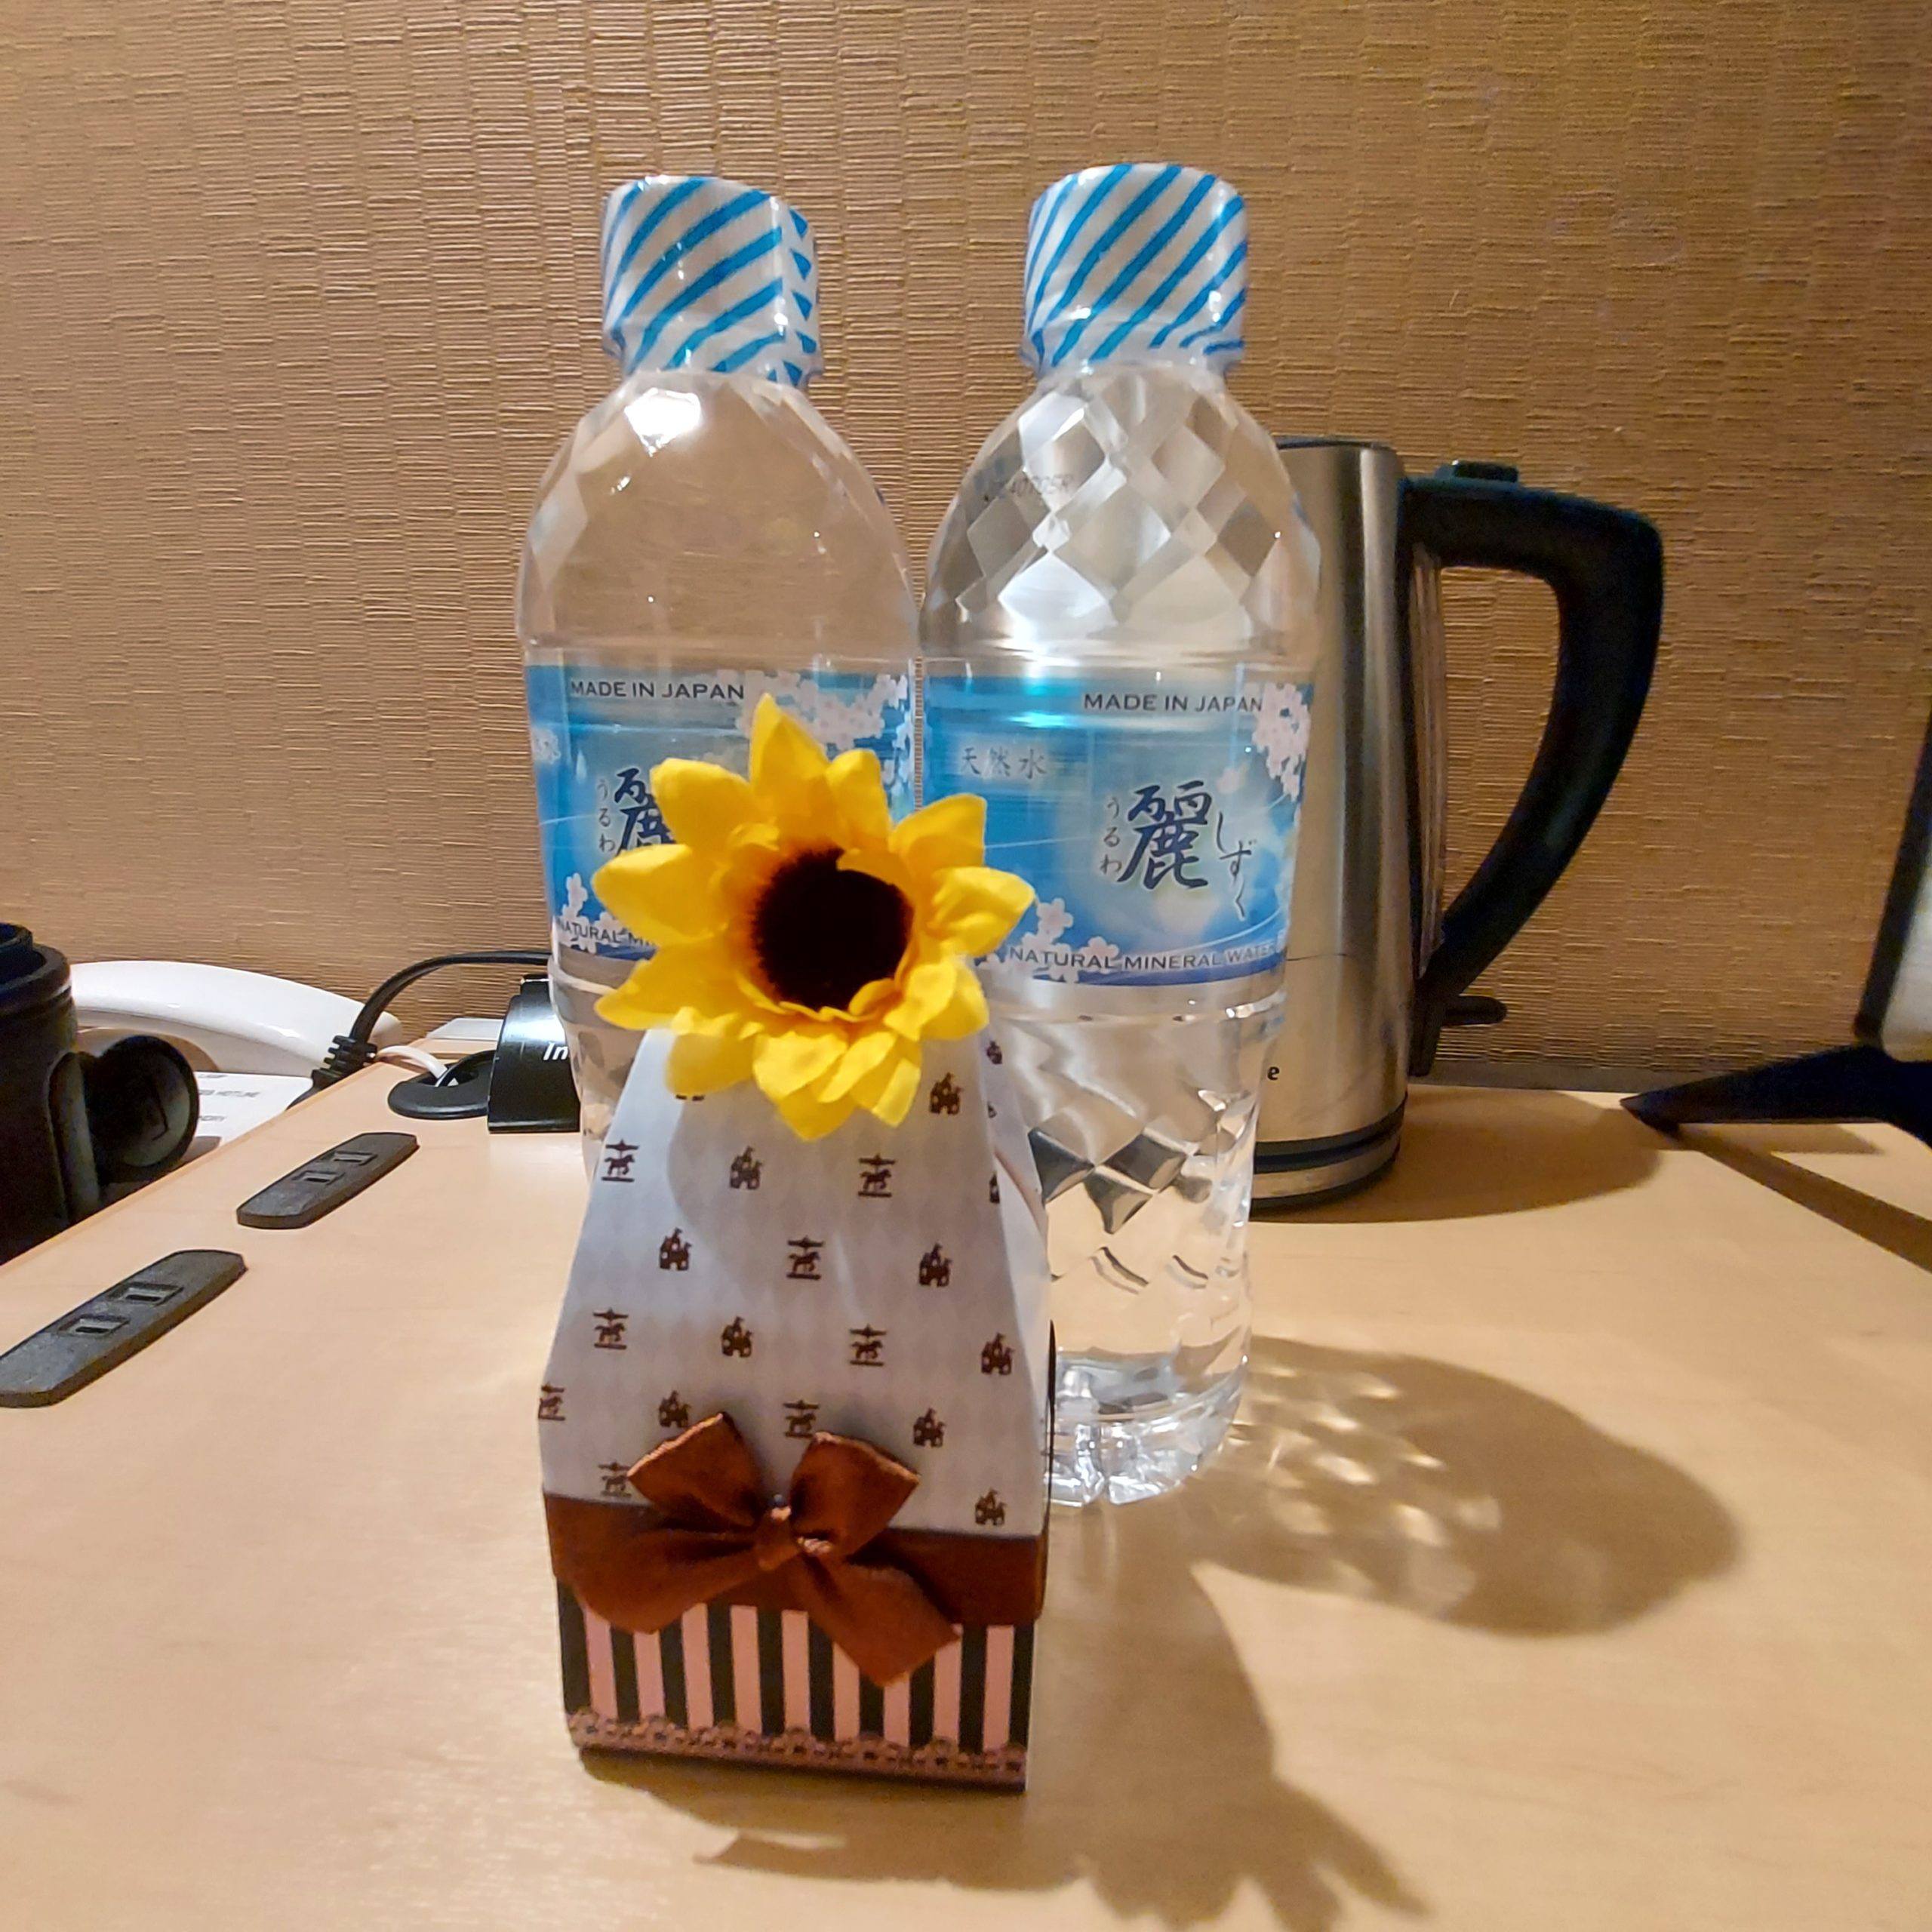 テーブルの上に置かれた水のボトル